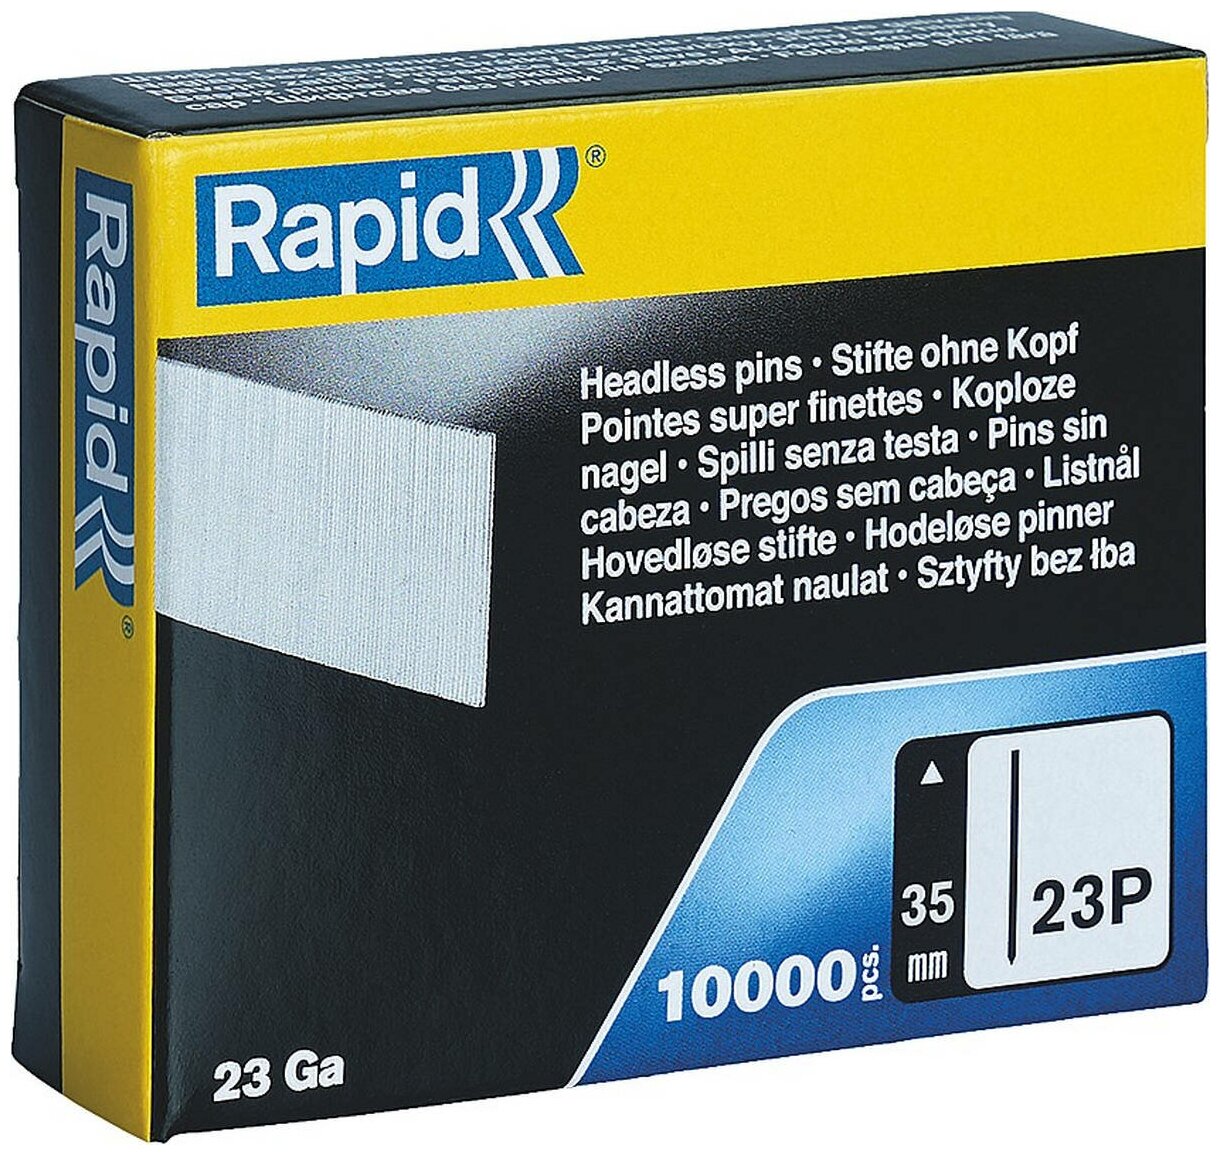 RAPID тип 23Р 35 мм, 1000 шт, Закаленные супертвердые гвозди (5001362)